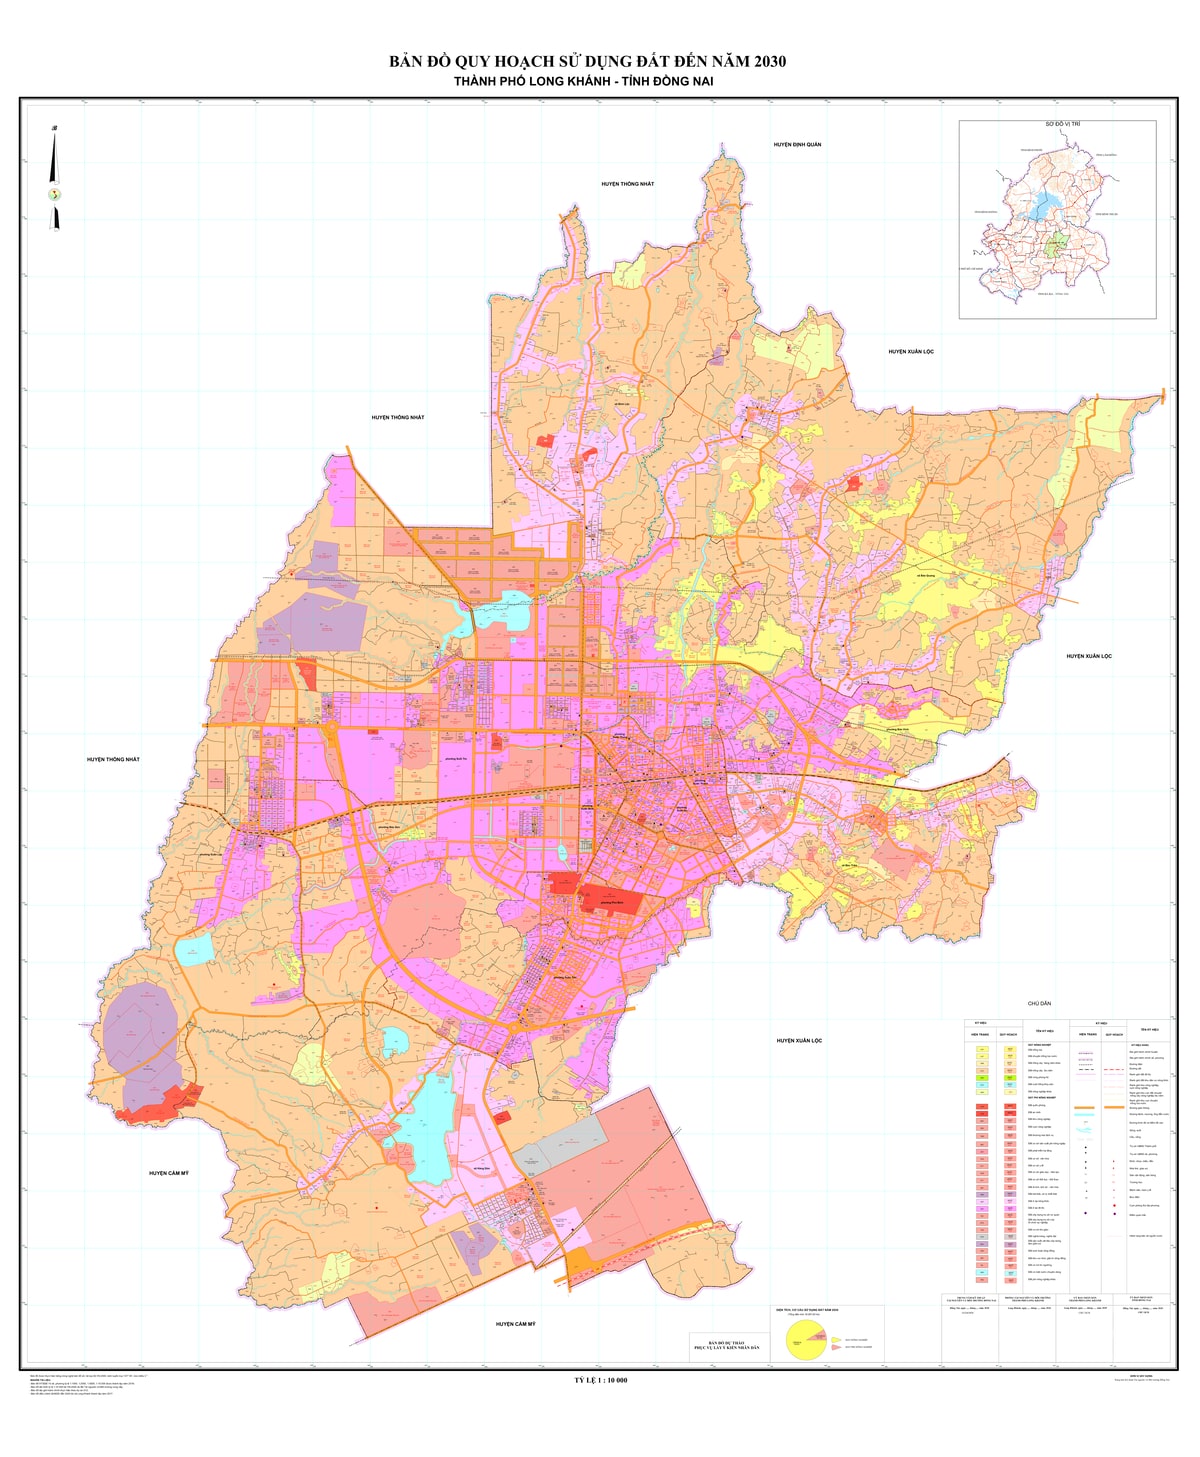 Bản đồ quy hoạch thành phố Long Khánh, tỉnh Đồng Nai đến năm 2030